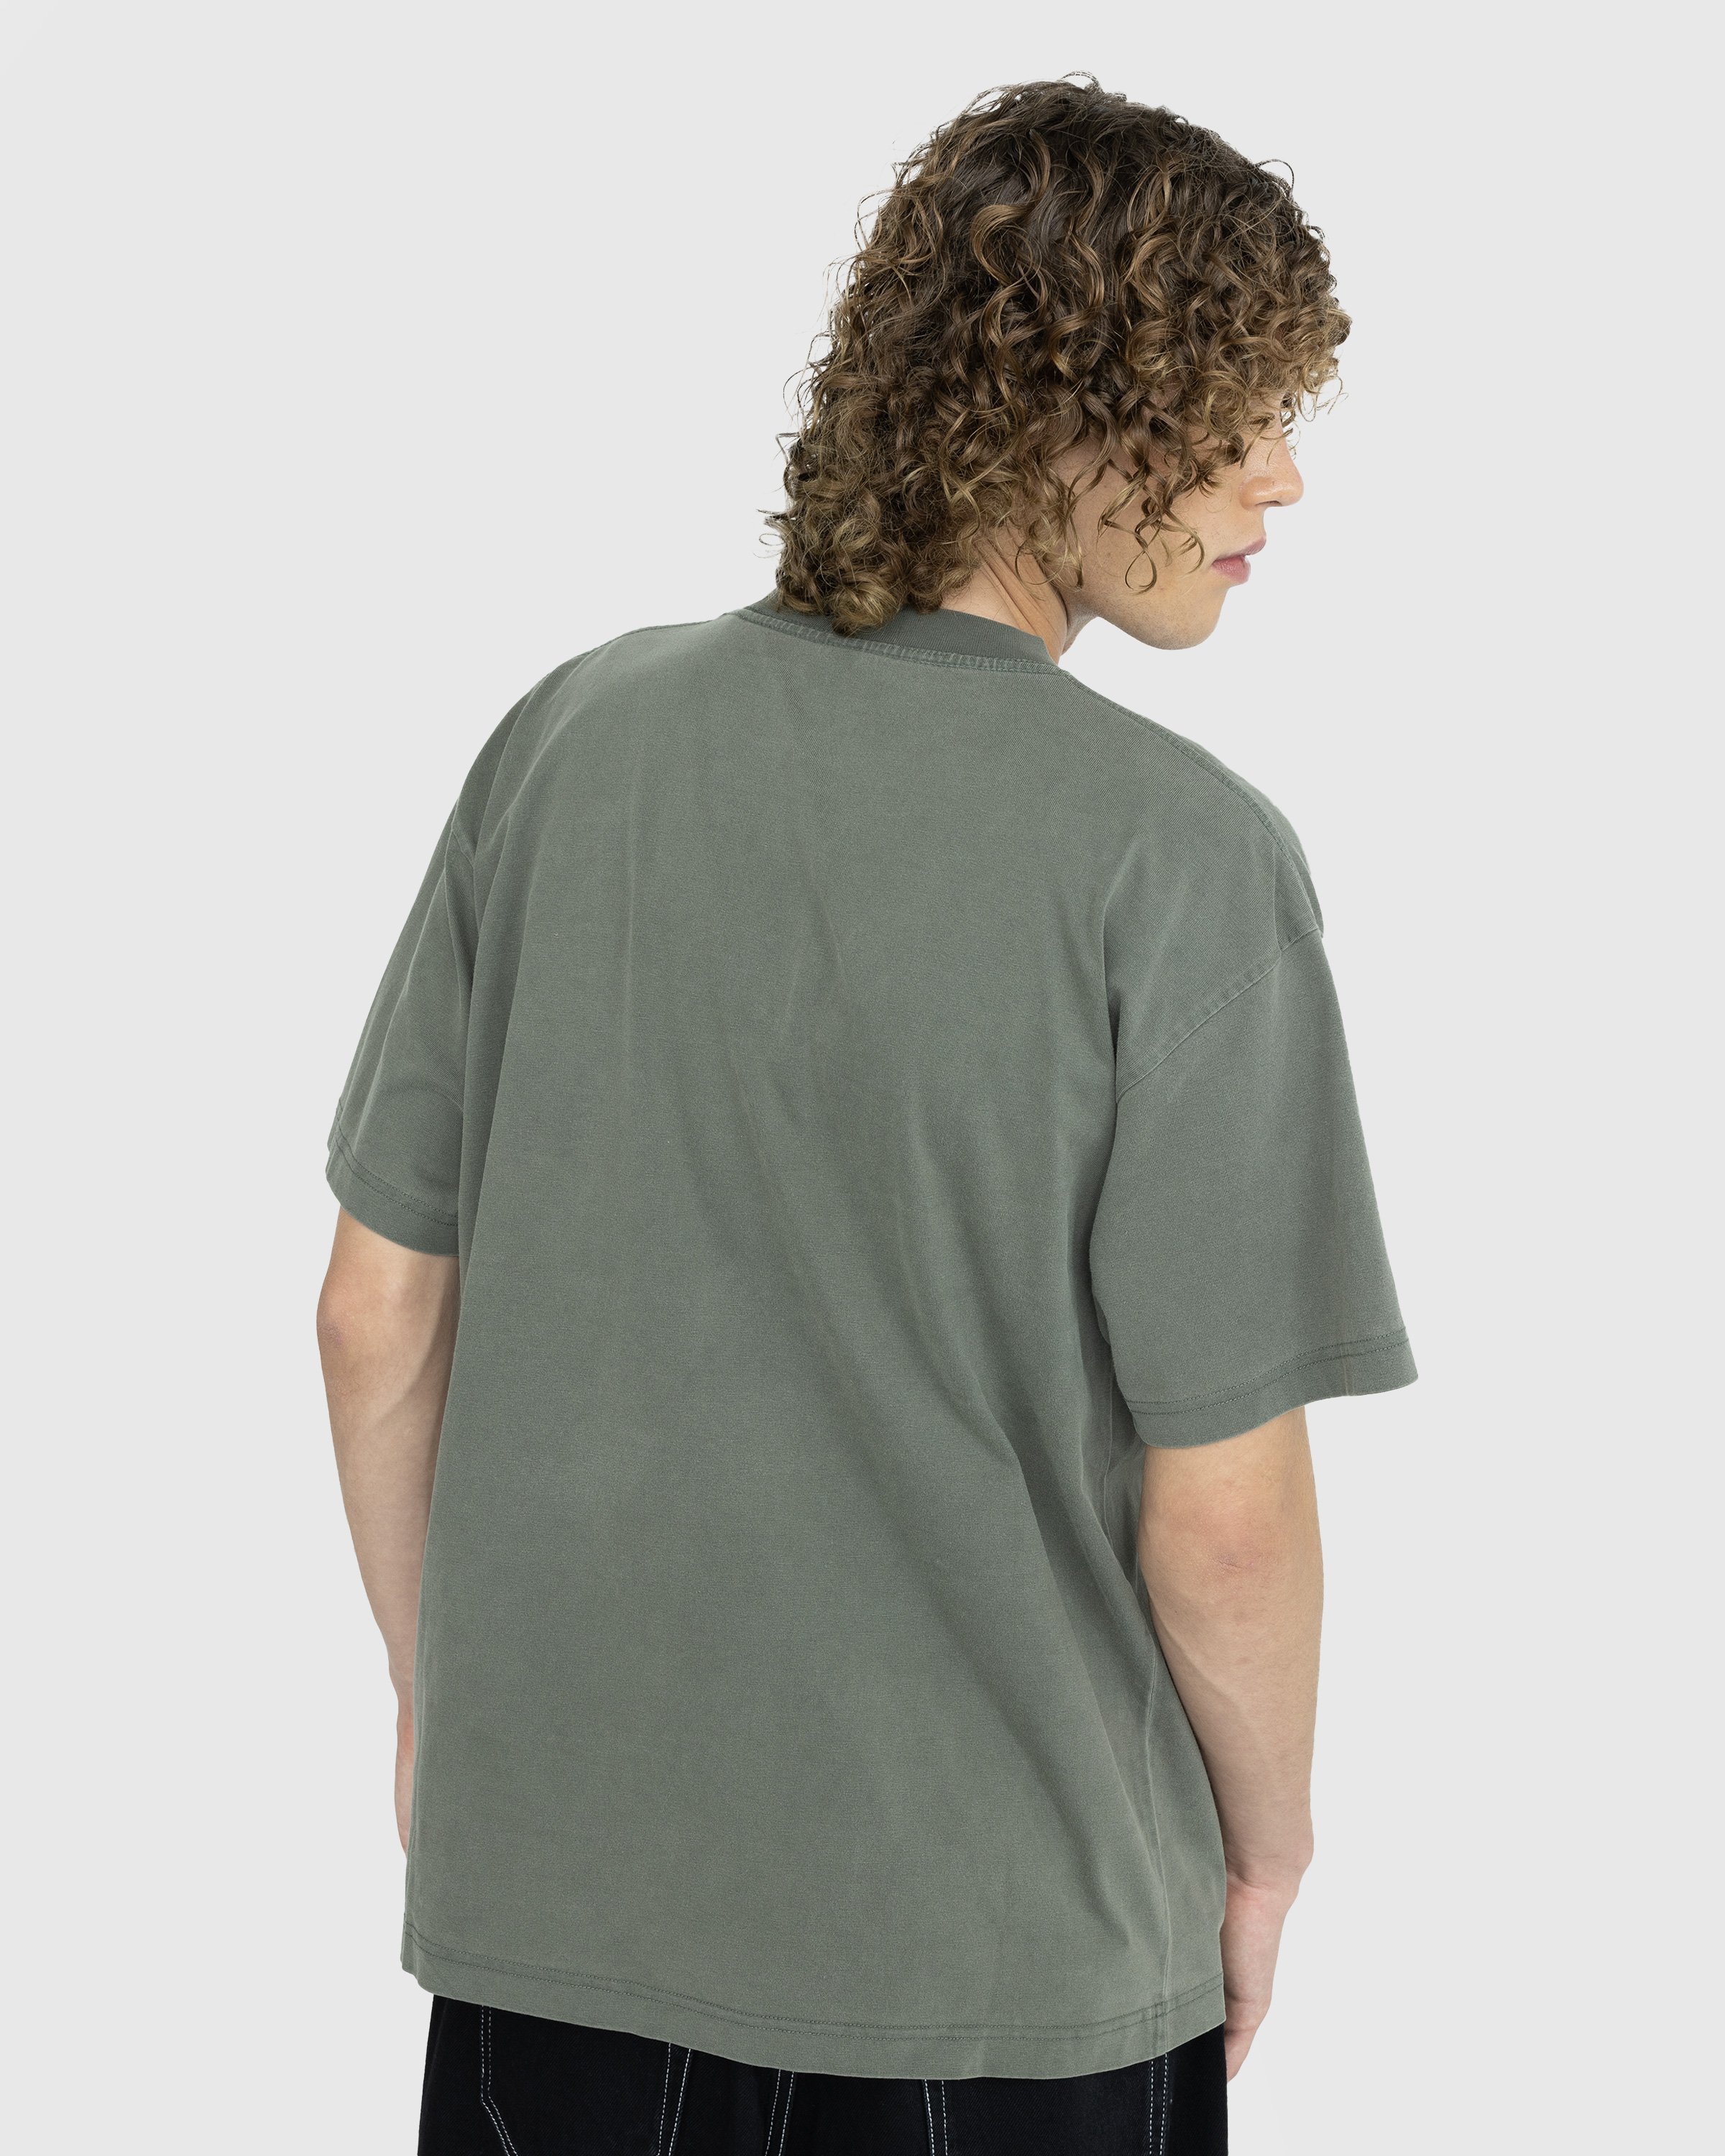 Patta - Basic Washed Pocket T-Shirt Beetle - Clothing - Green - Image 3